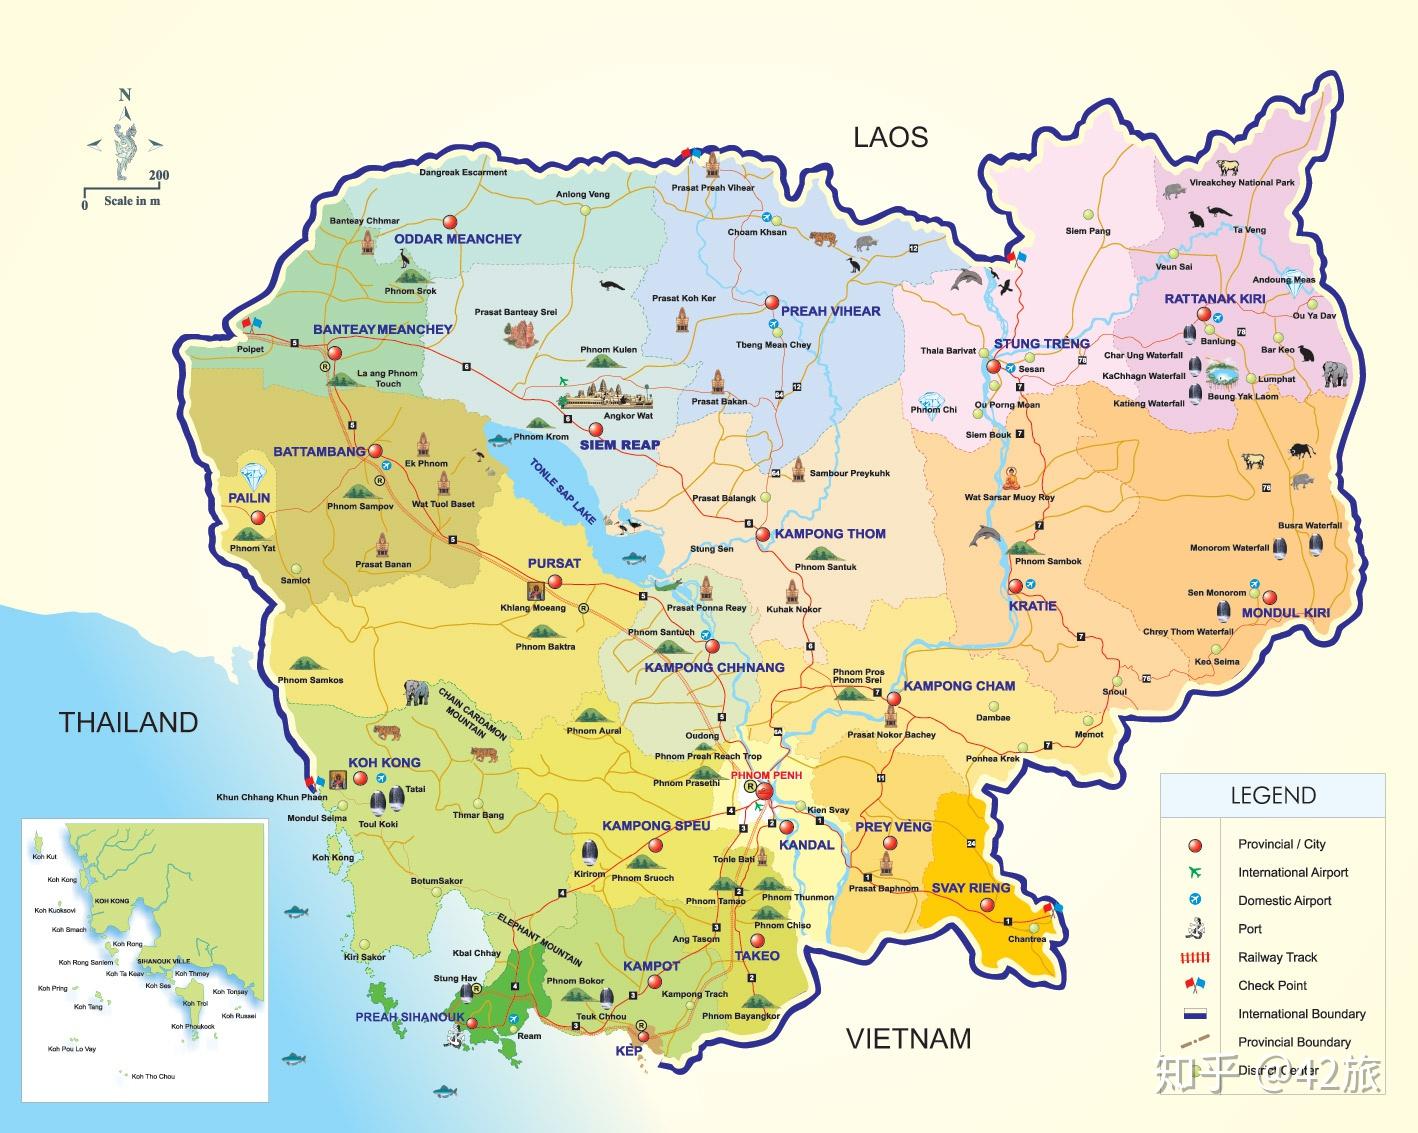 接壤,东北部与老挝交接,东部及东南部与越南毗邻,南部则面向暹罗湾